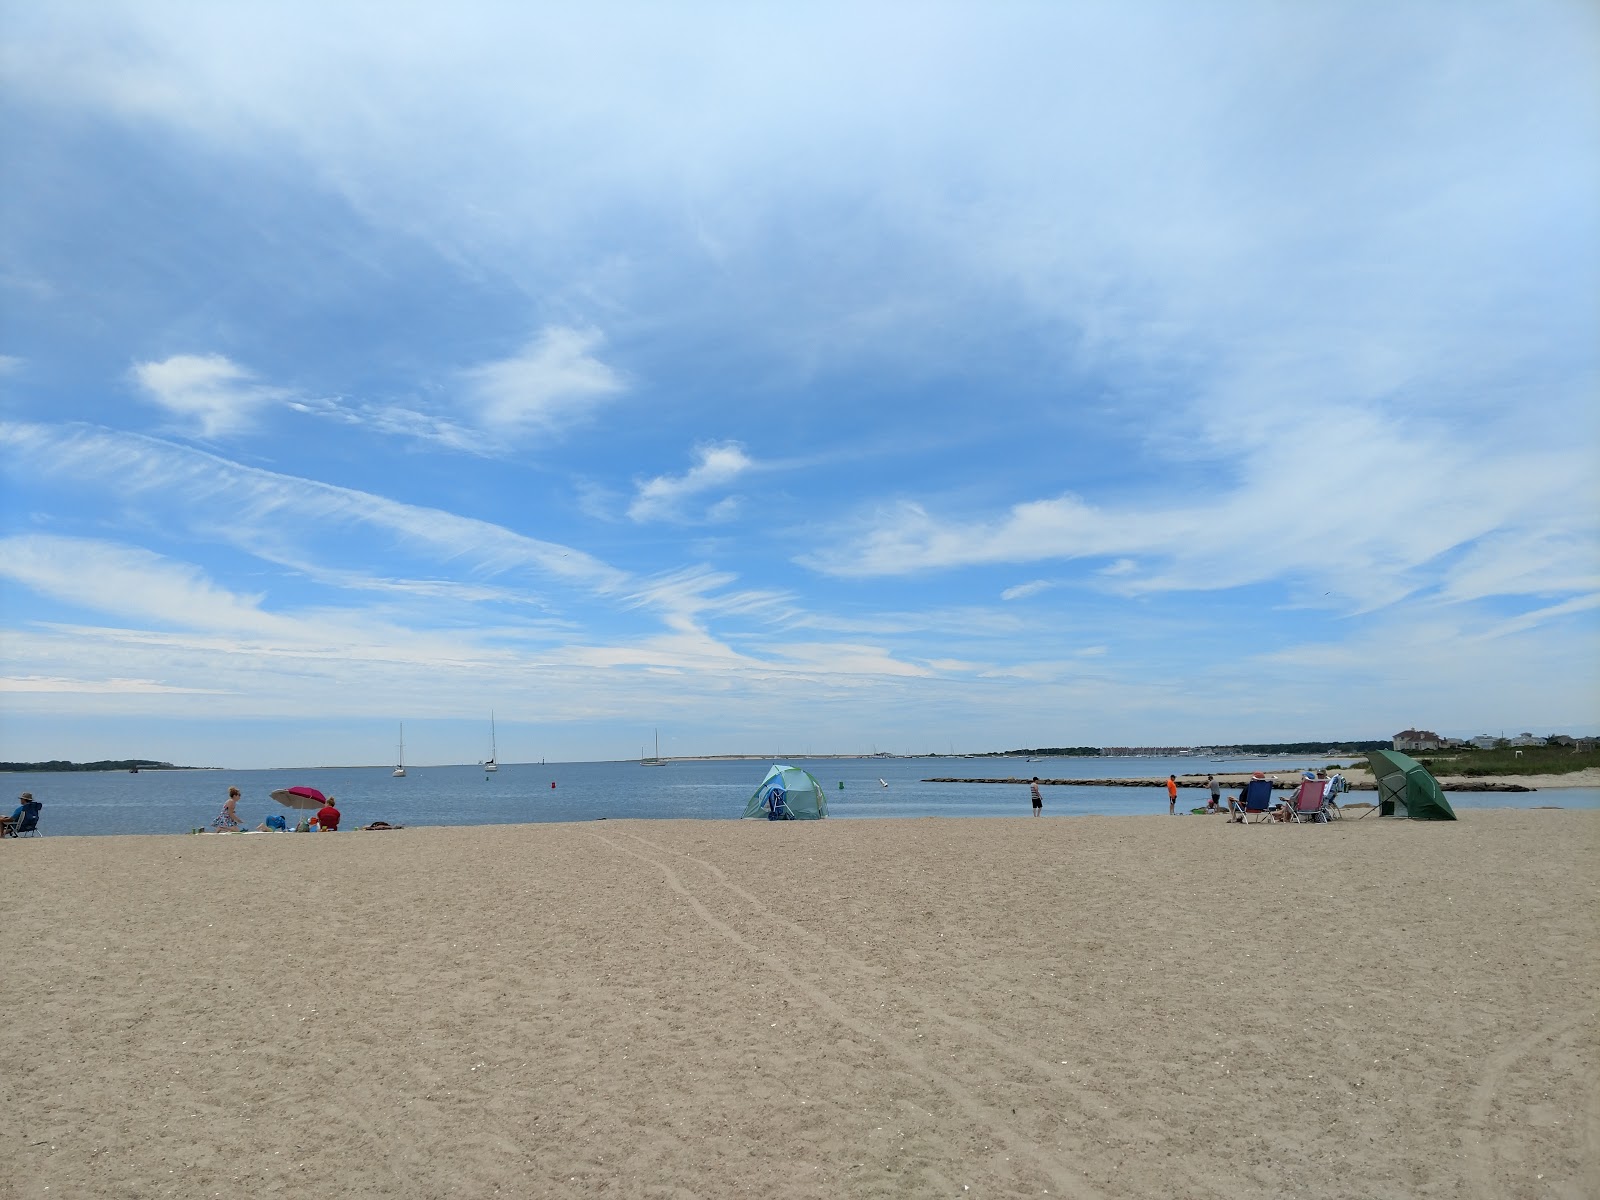 Zdjęcie Colonial Acres Beach - popularne miejsce wśród znawców relaksu